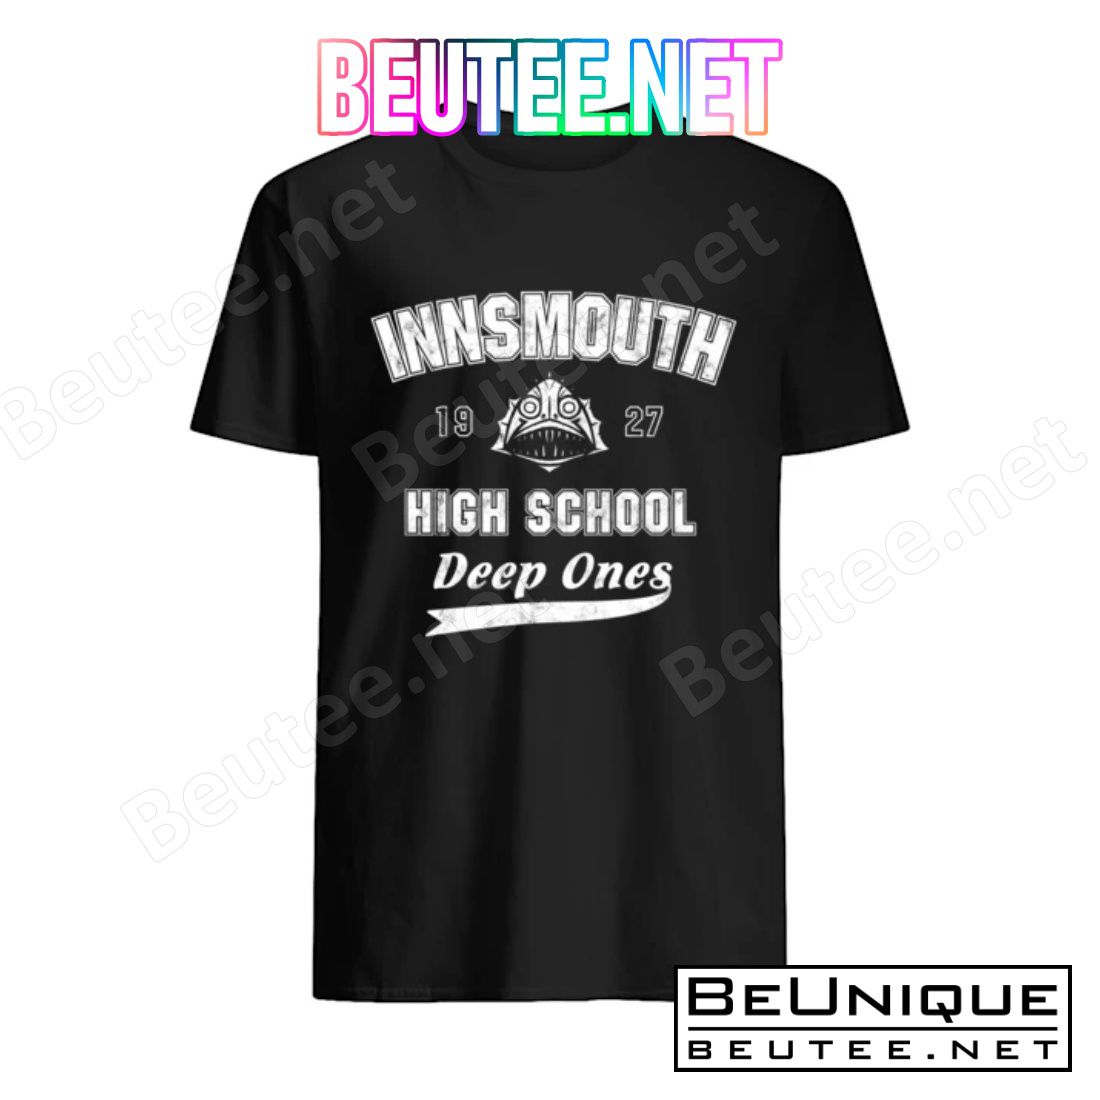 H.p. Lovecraft Innsmouth High School Deep Ones 1927 Shirt